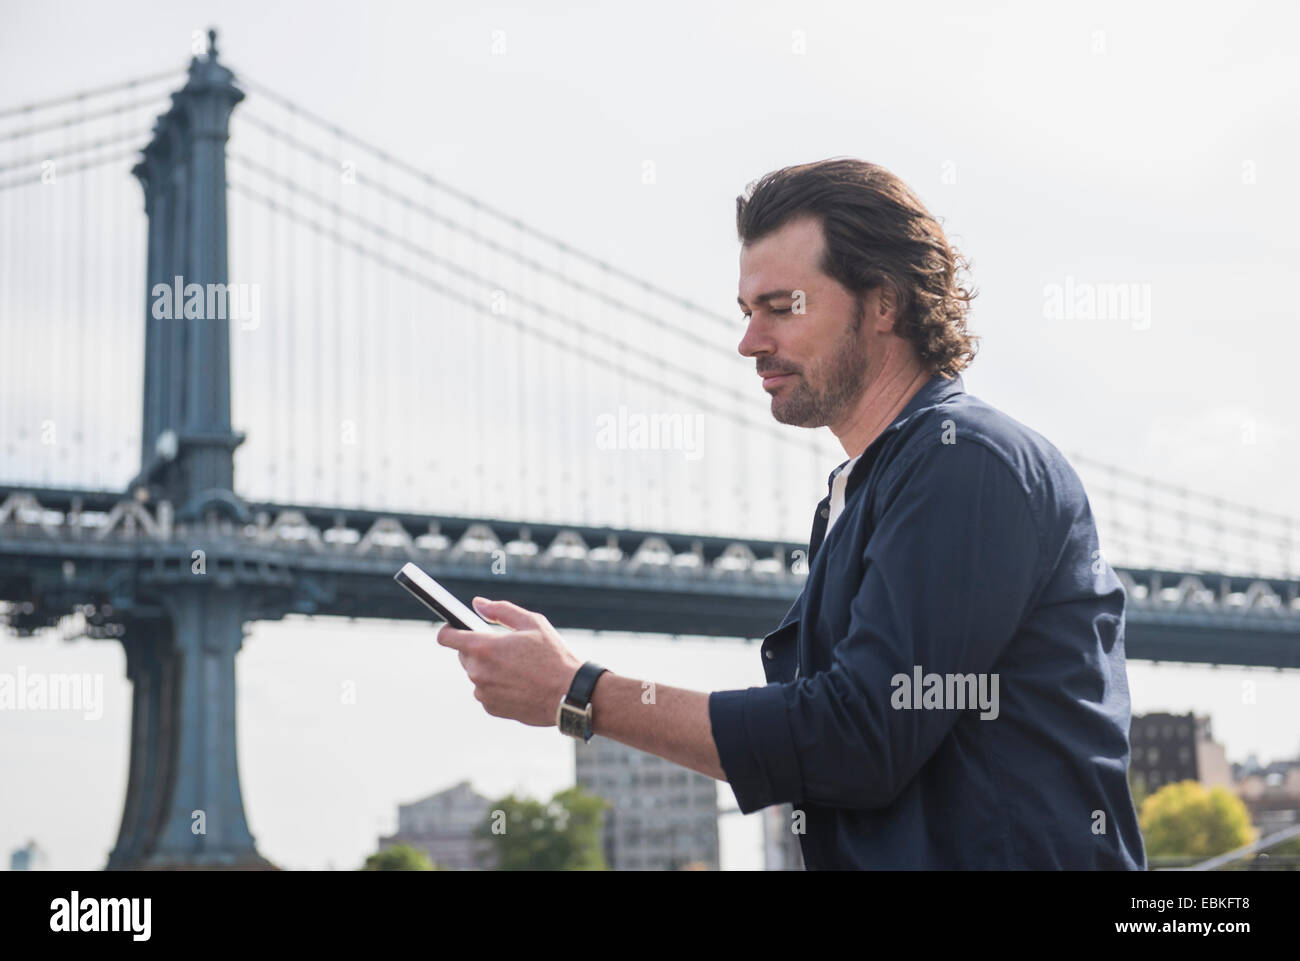 Stati Uniti d'America, nello Stato di New York, New York, Brooklyn, uomo utilizzando tablet pc, Manhattan Bridge in background Foto Stock